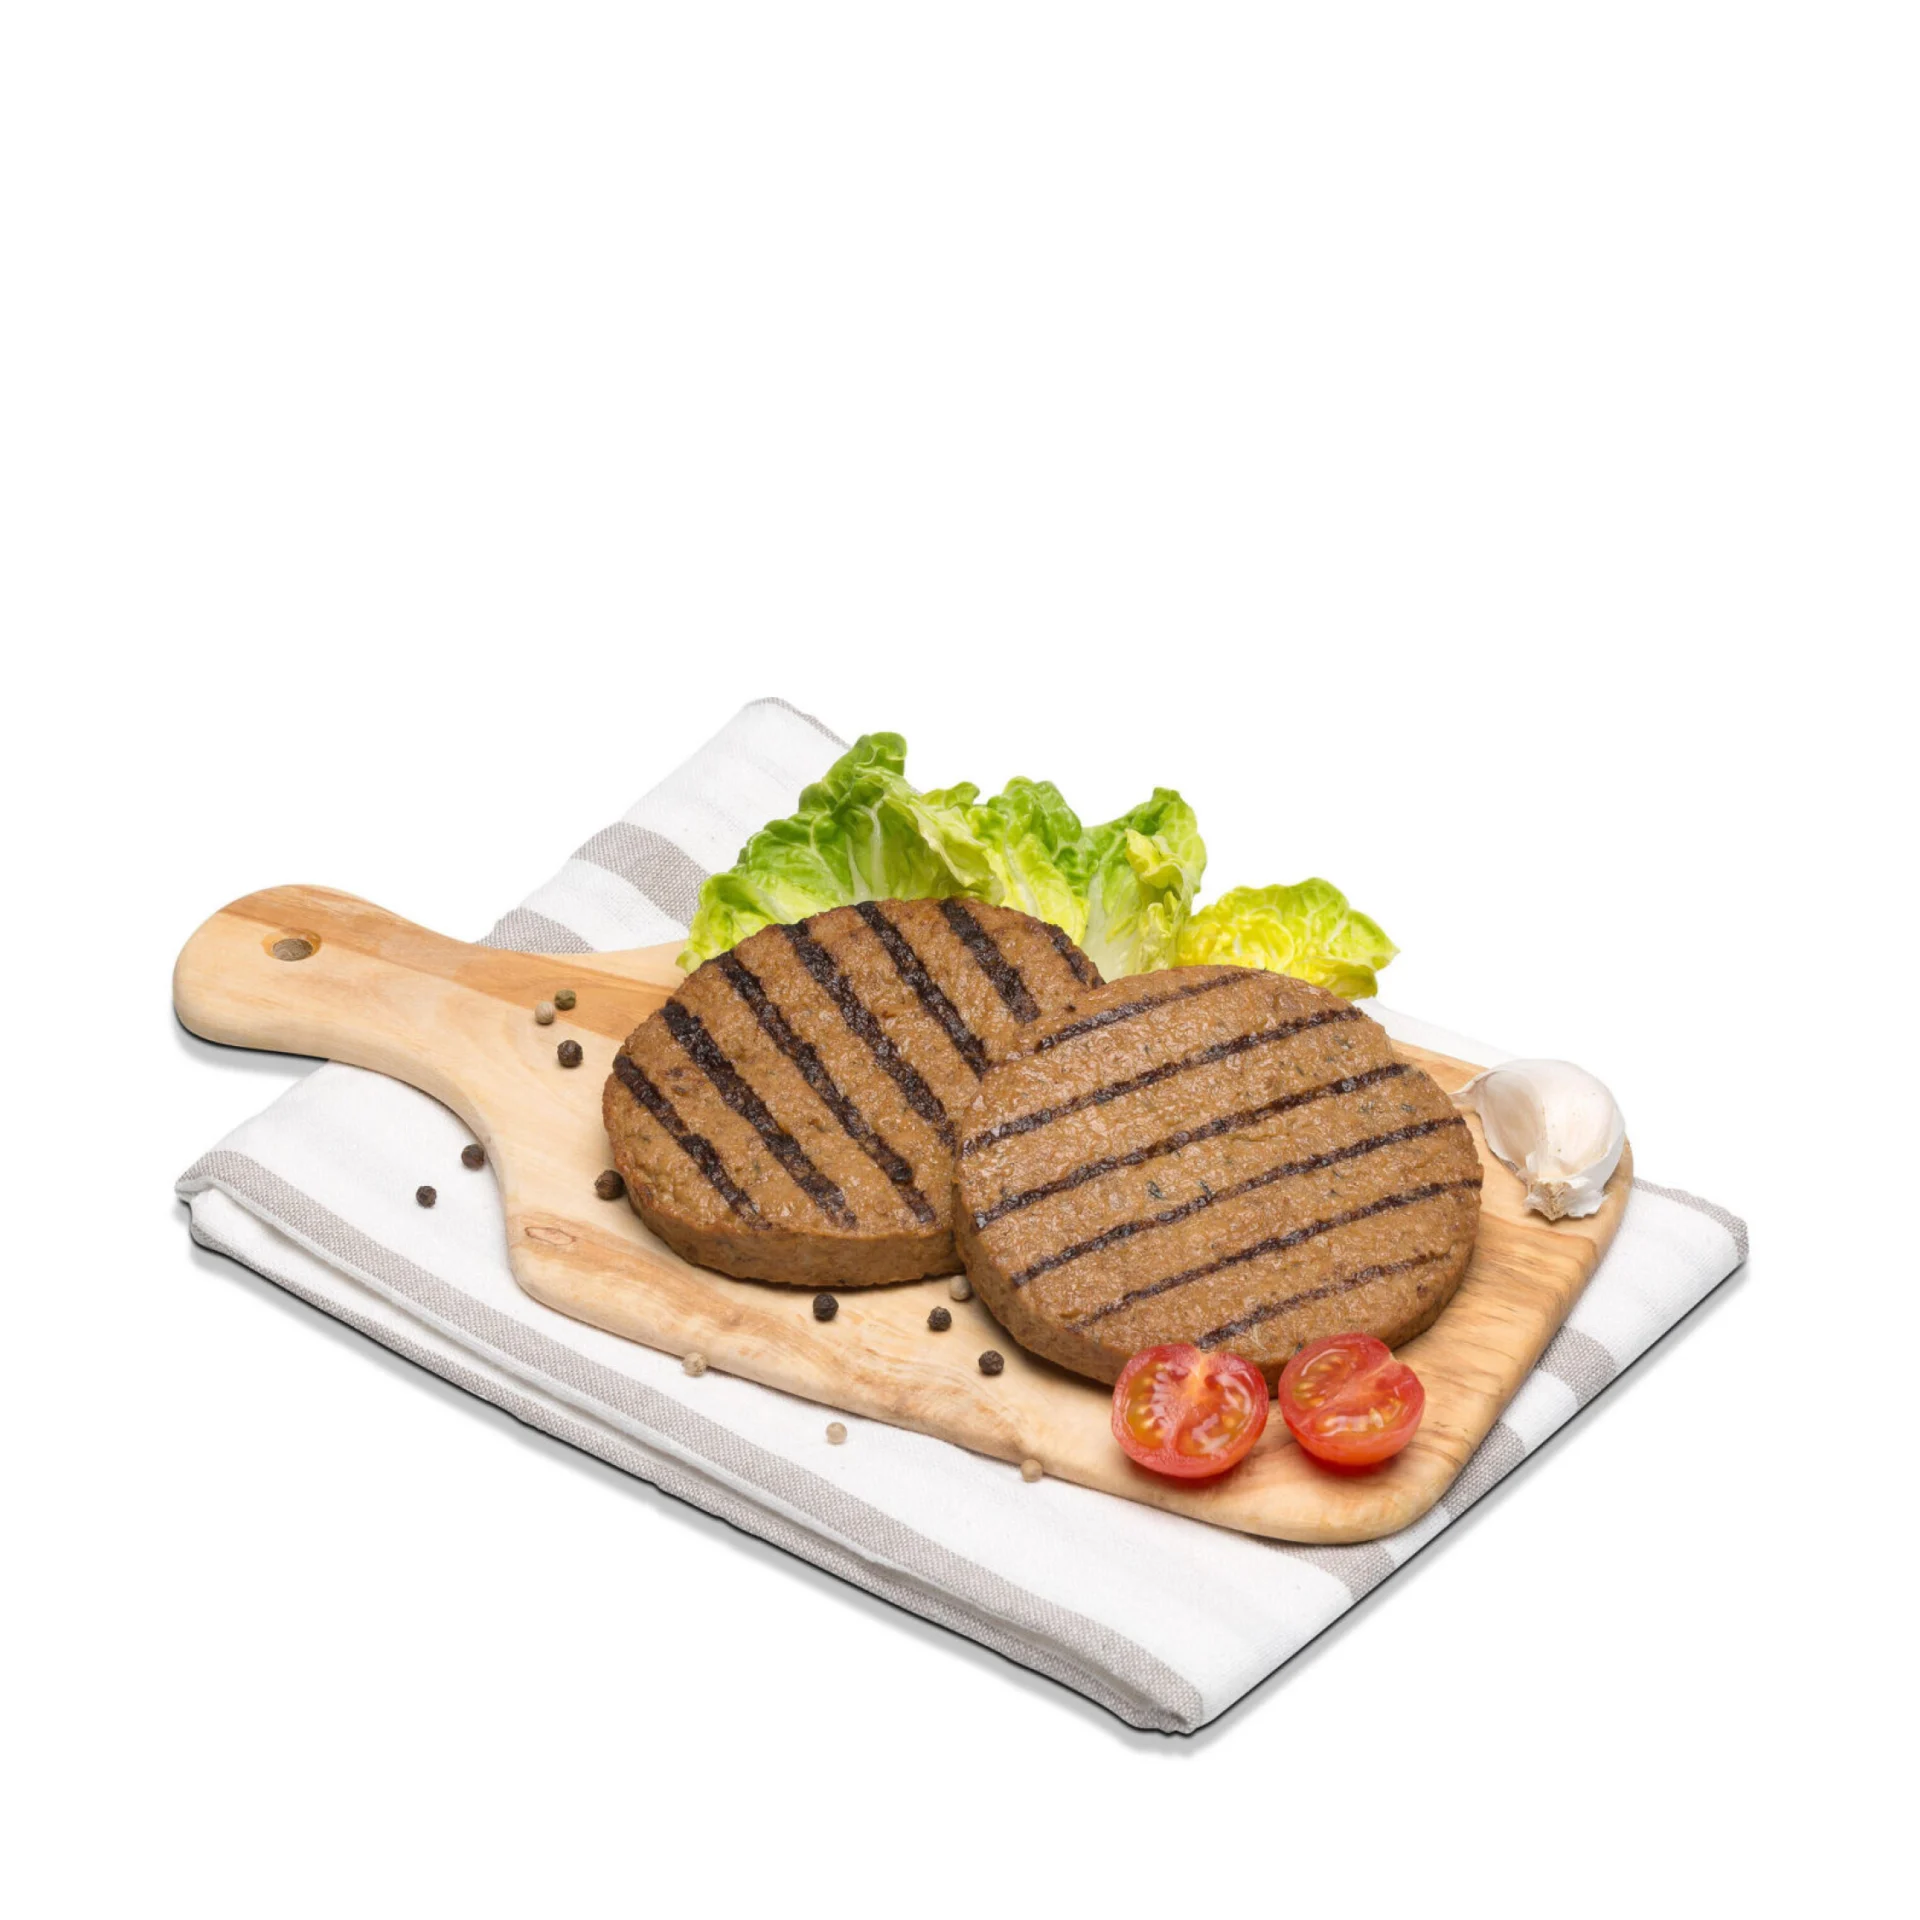 V-Love Burger on a cutting board with garnish.